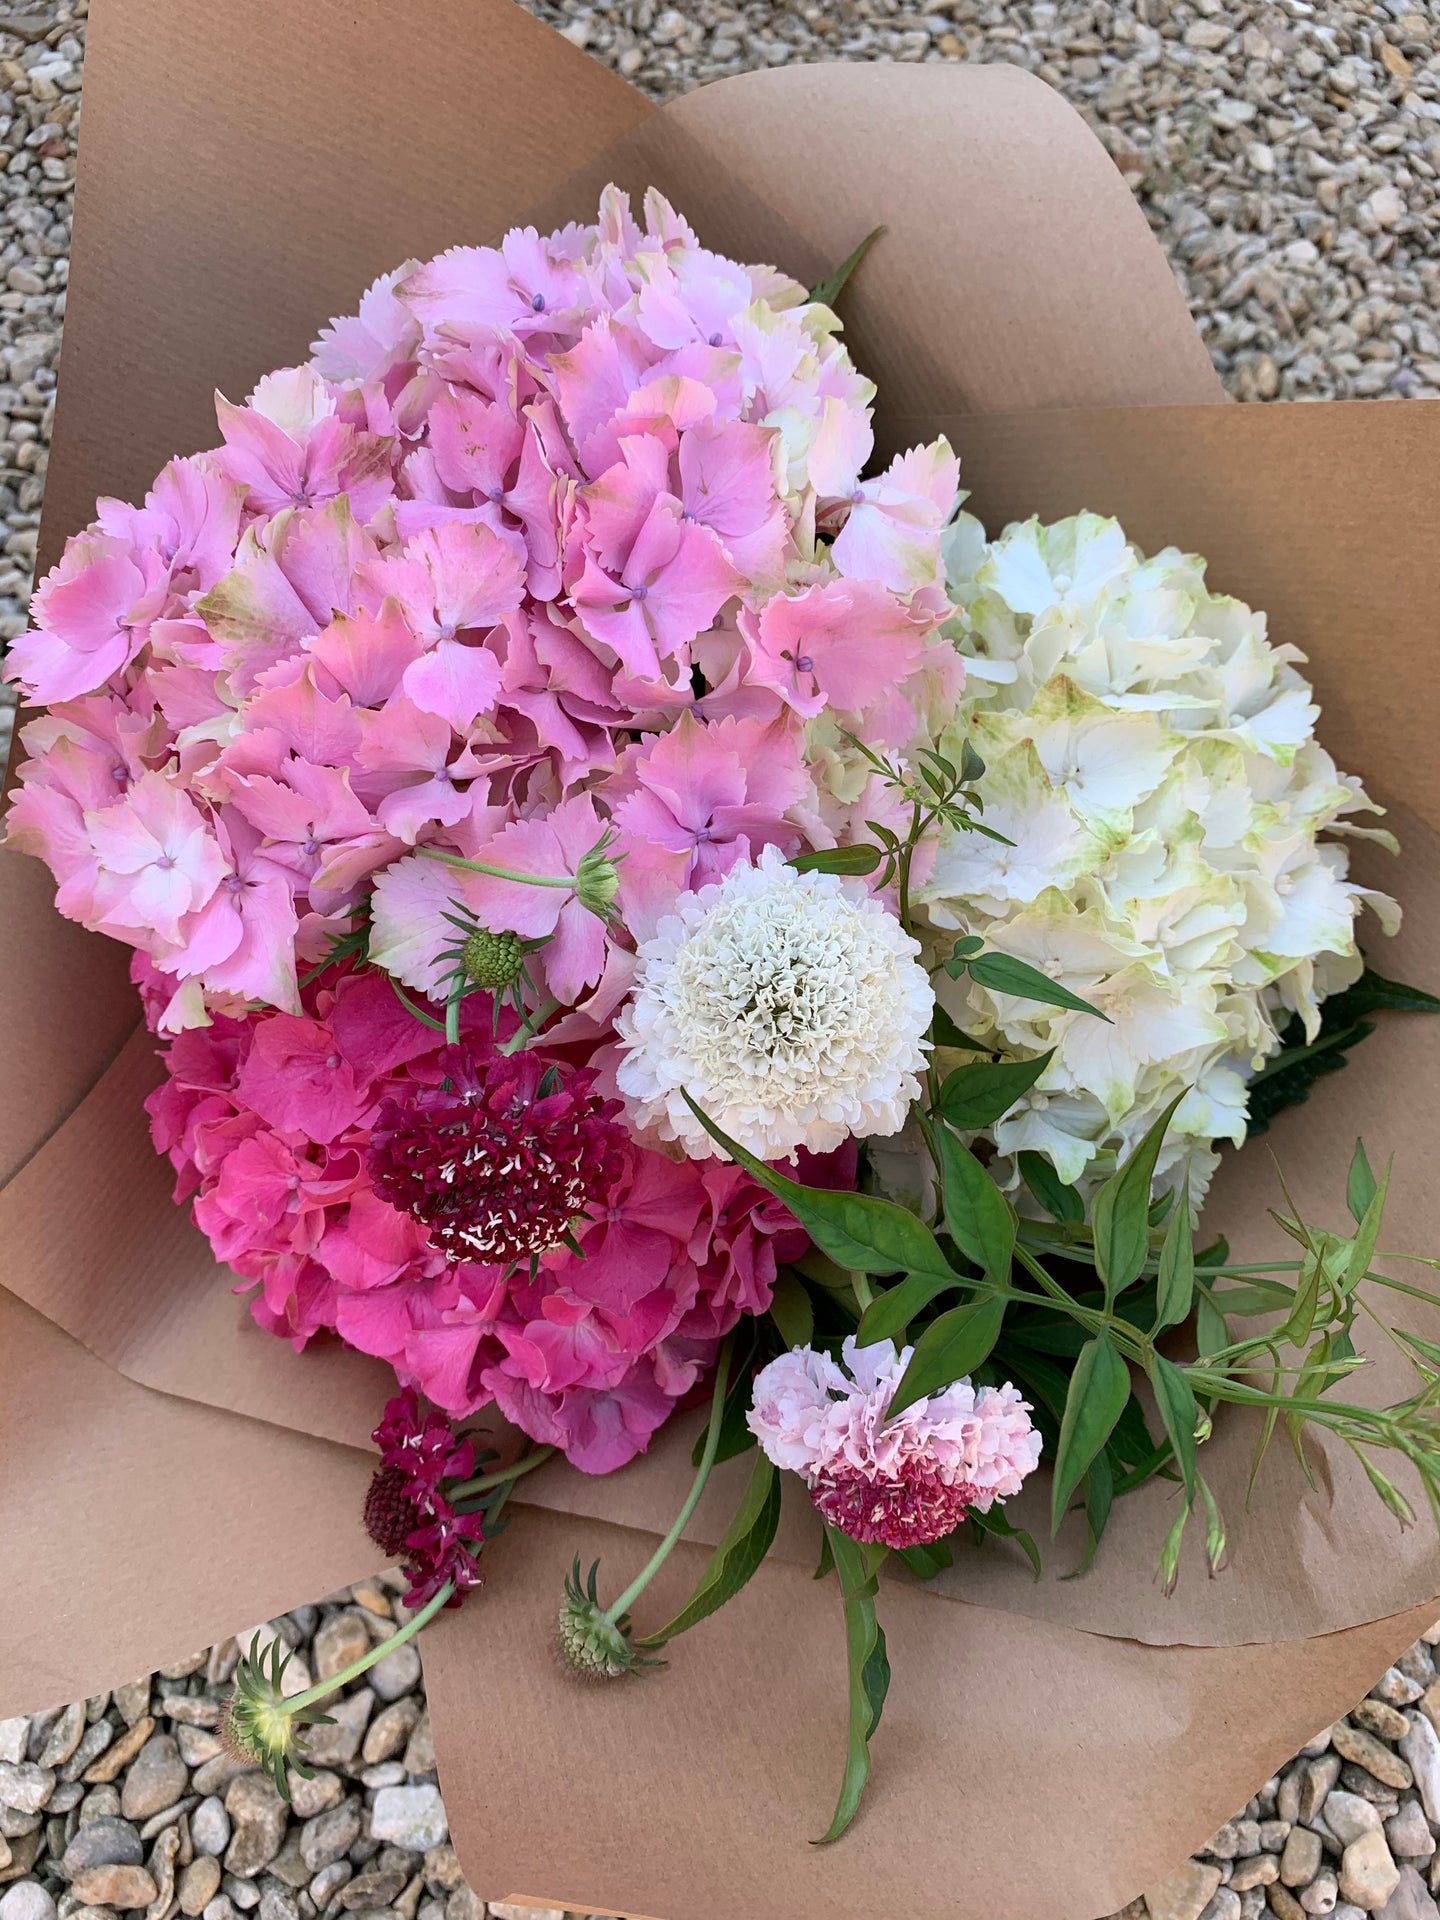 25/6/20 British Summer flower Bouquet 100% British grown blooms